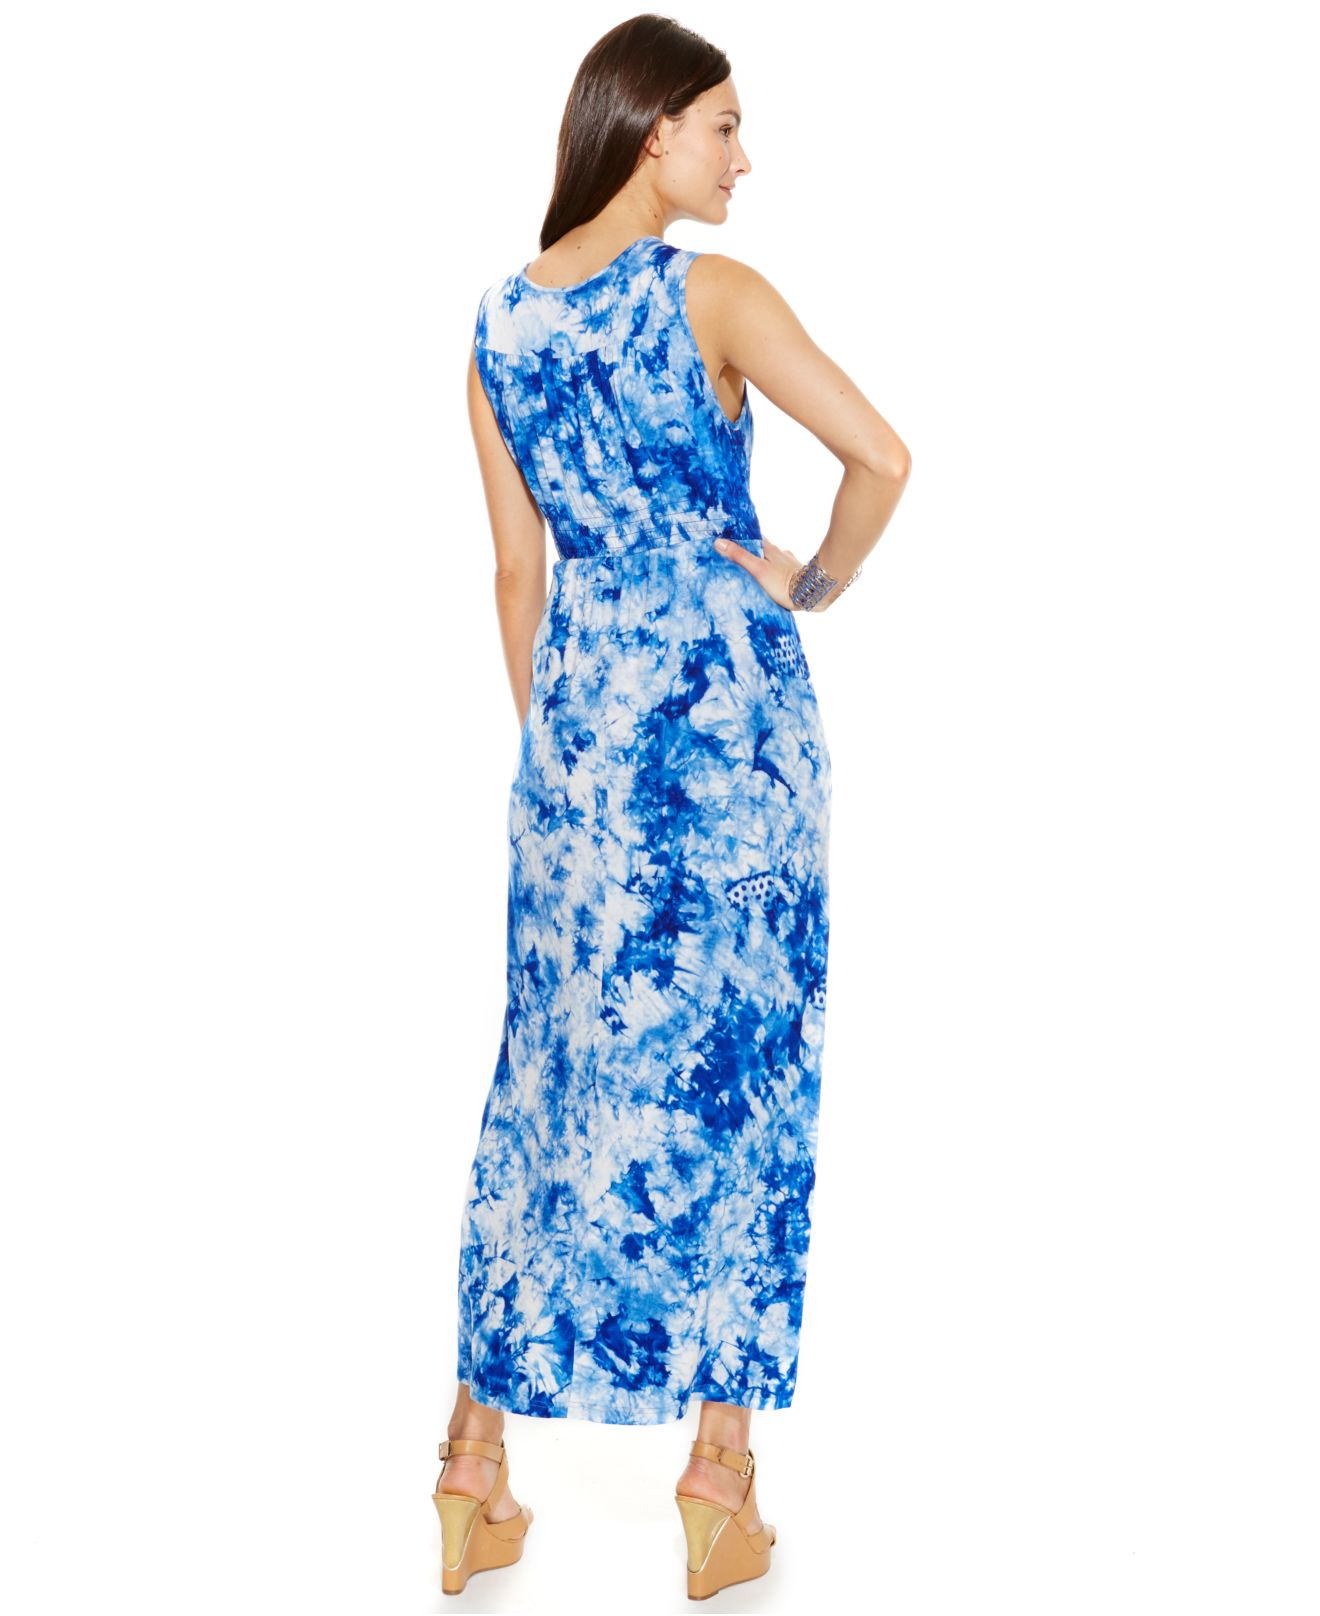 Lyst - Spense Petite Tie-Dye Sky Braided Maxi Dress in Blue